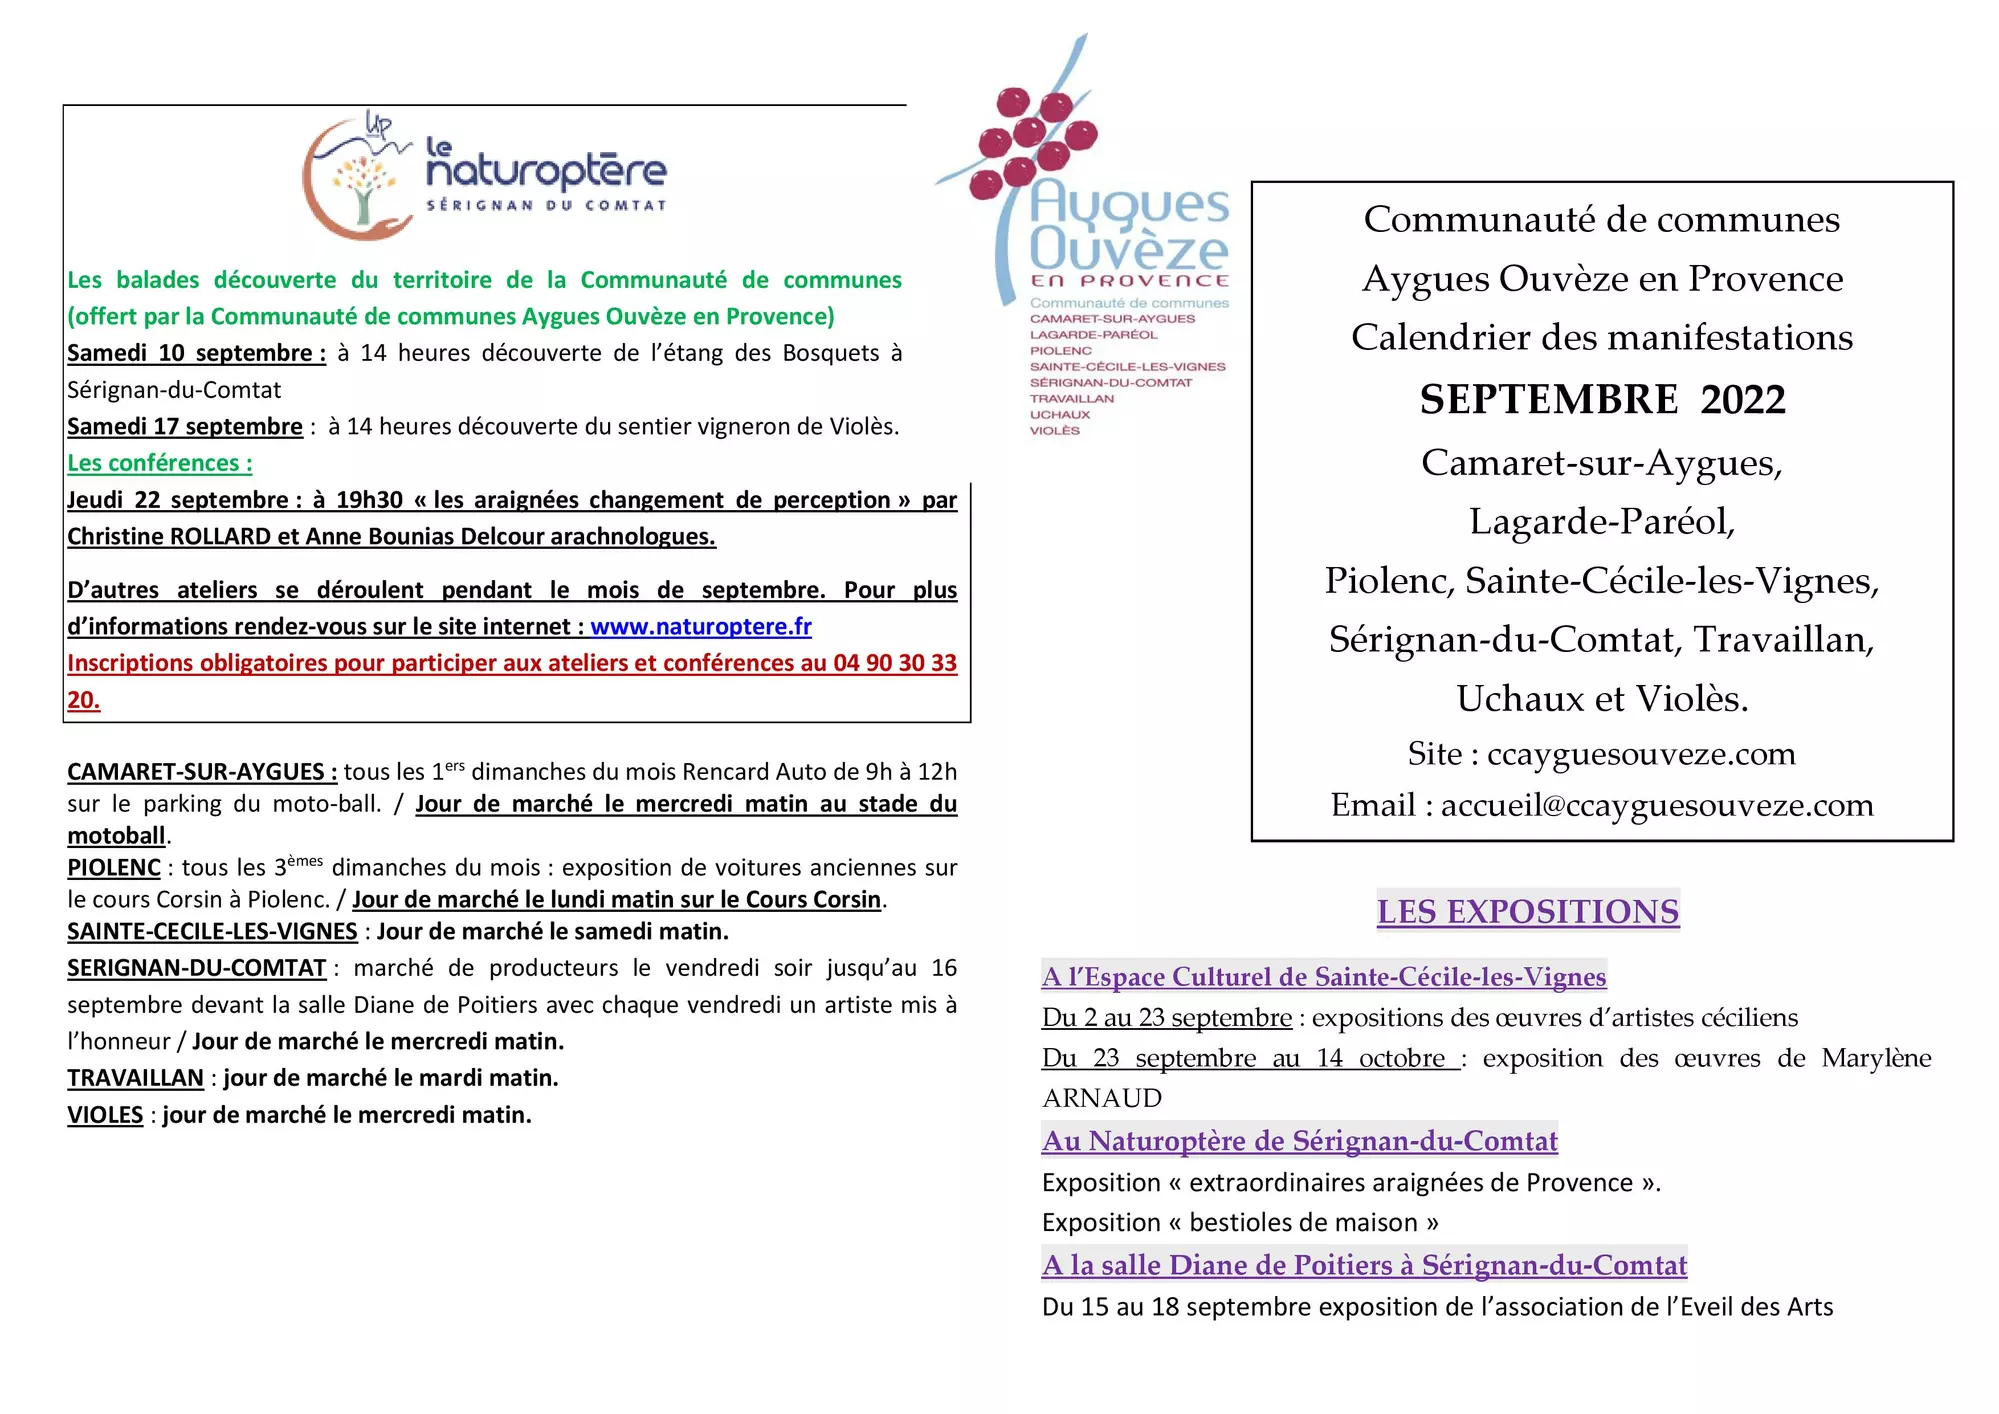 Agenda des manifestations du mois de septembre sur la Communauté de communes Aygues Ouvèze en Provence